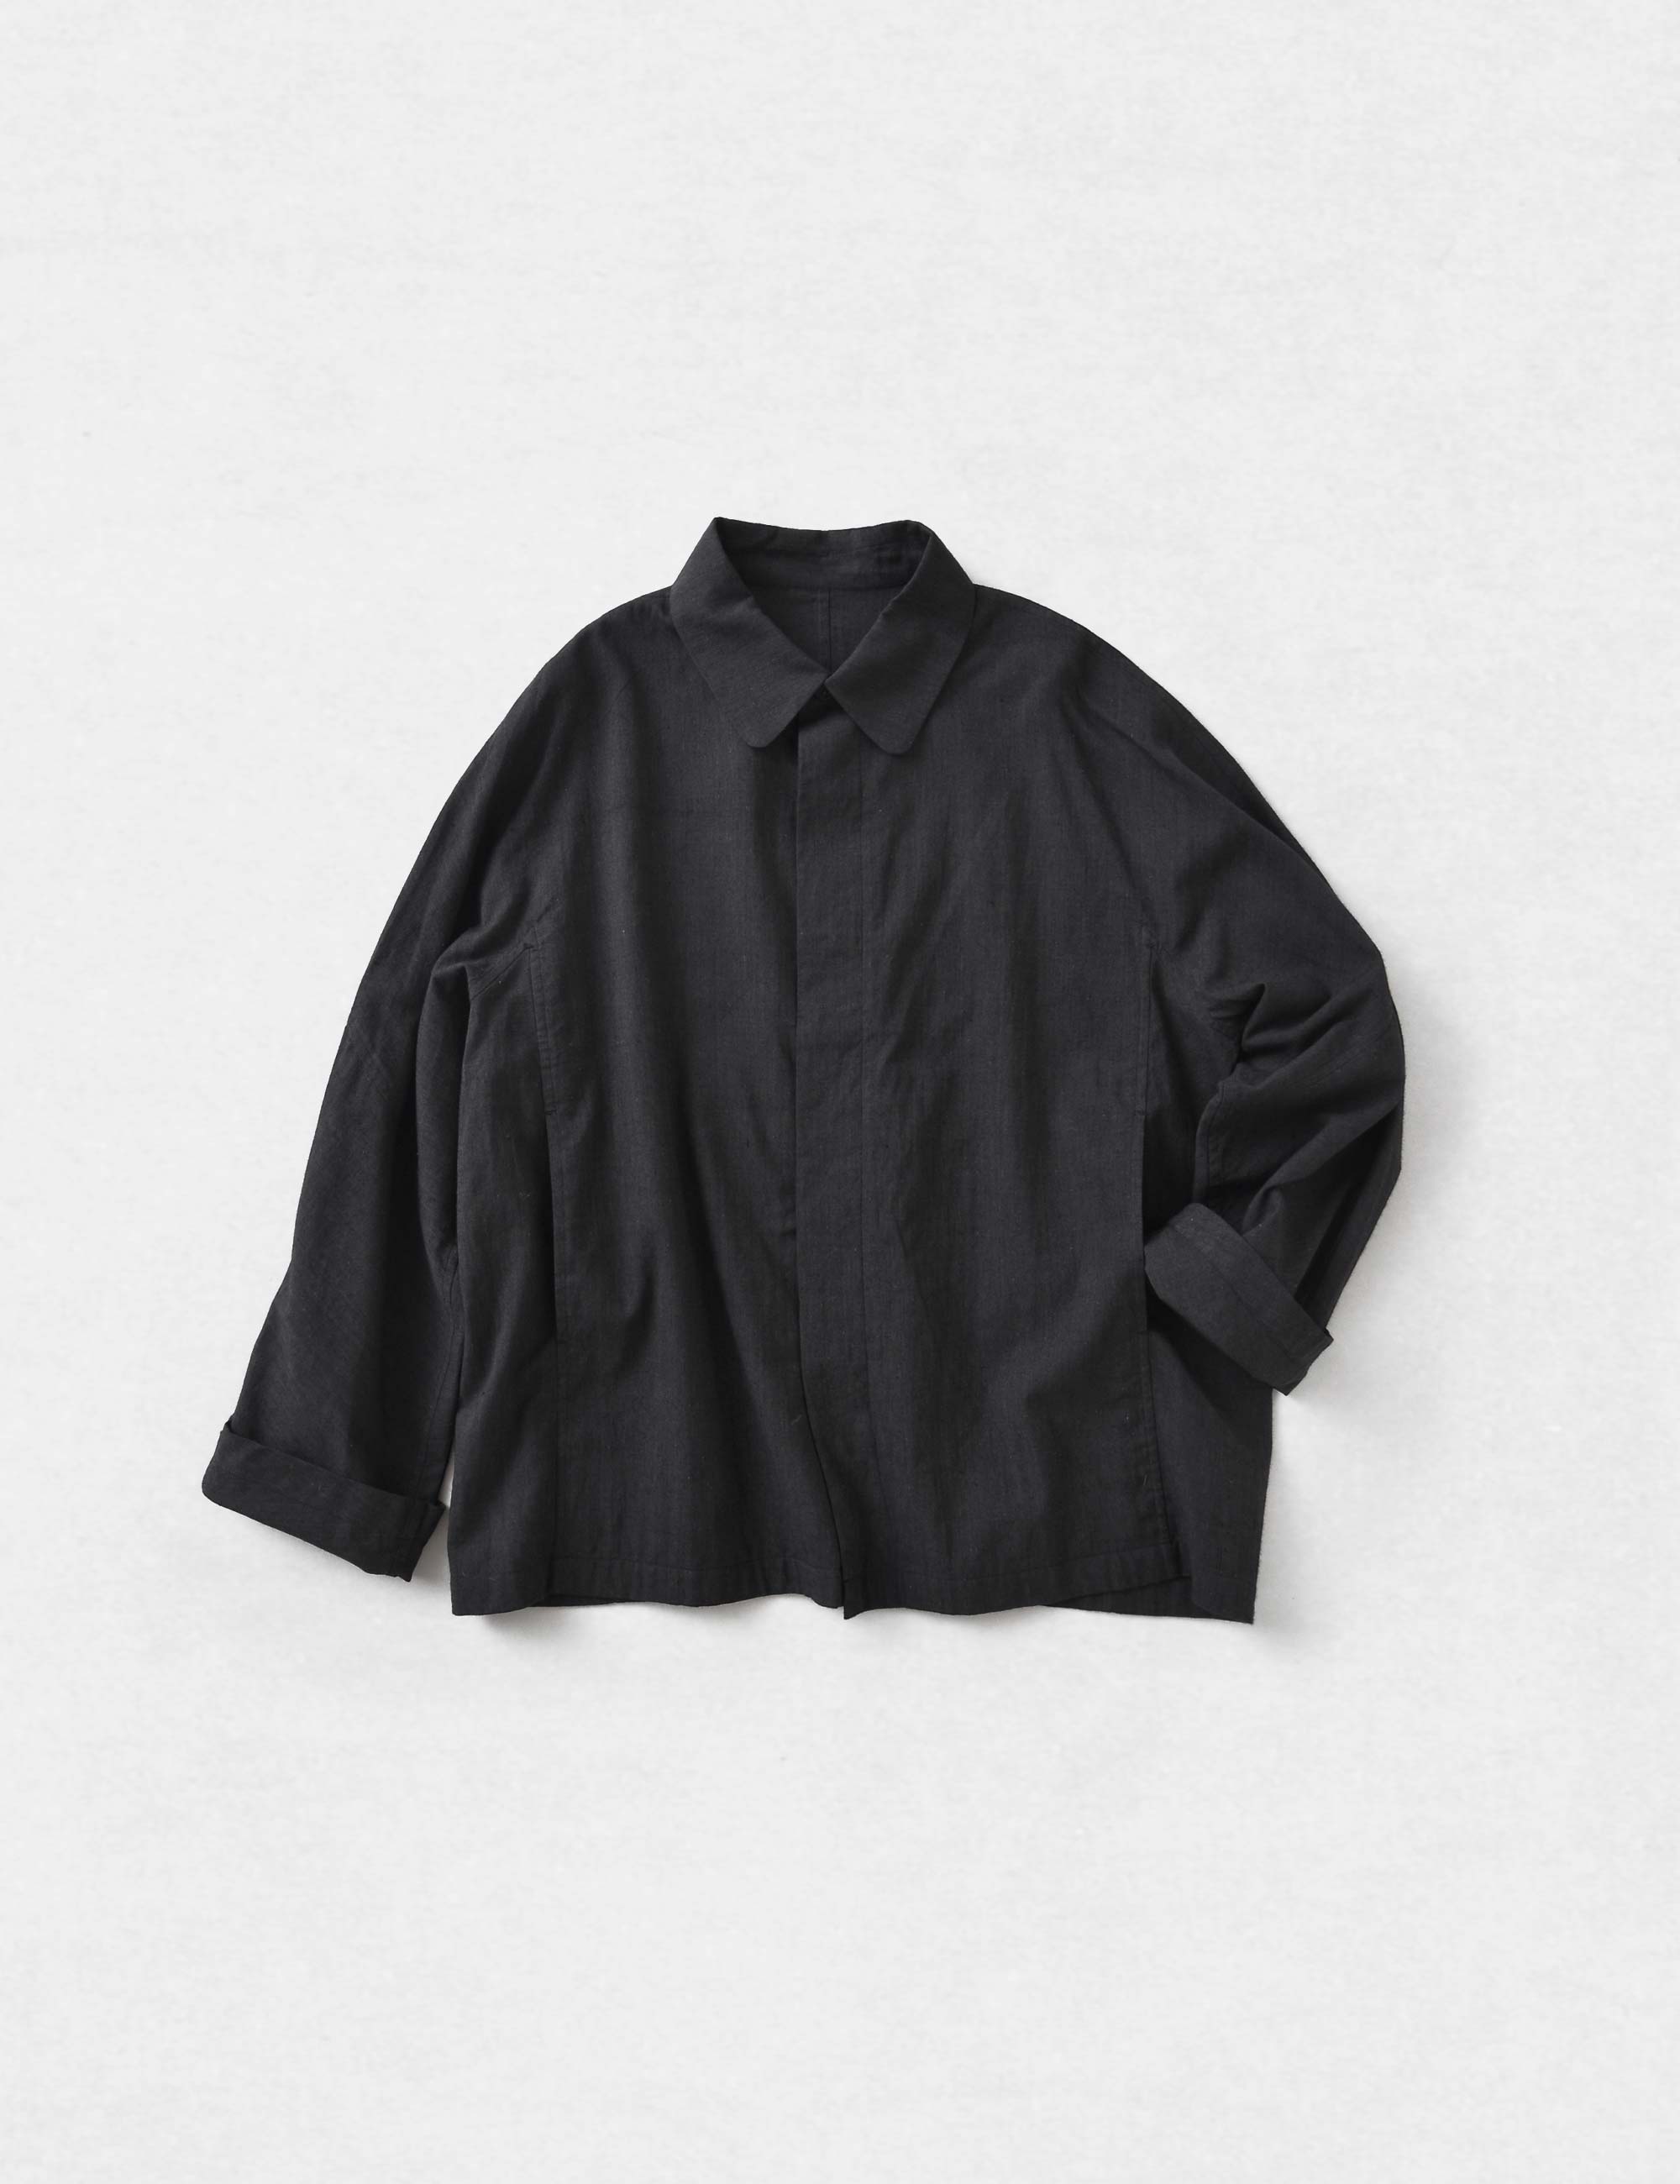 ヨーガンレール ウール 100% ワイド ジャケット ブラック 黒 サイズ M